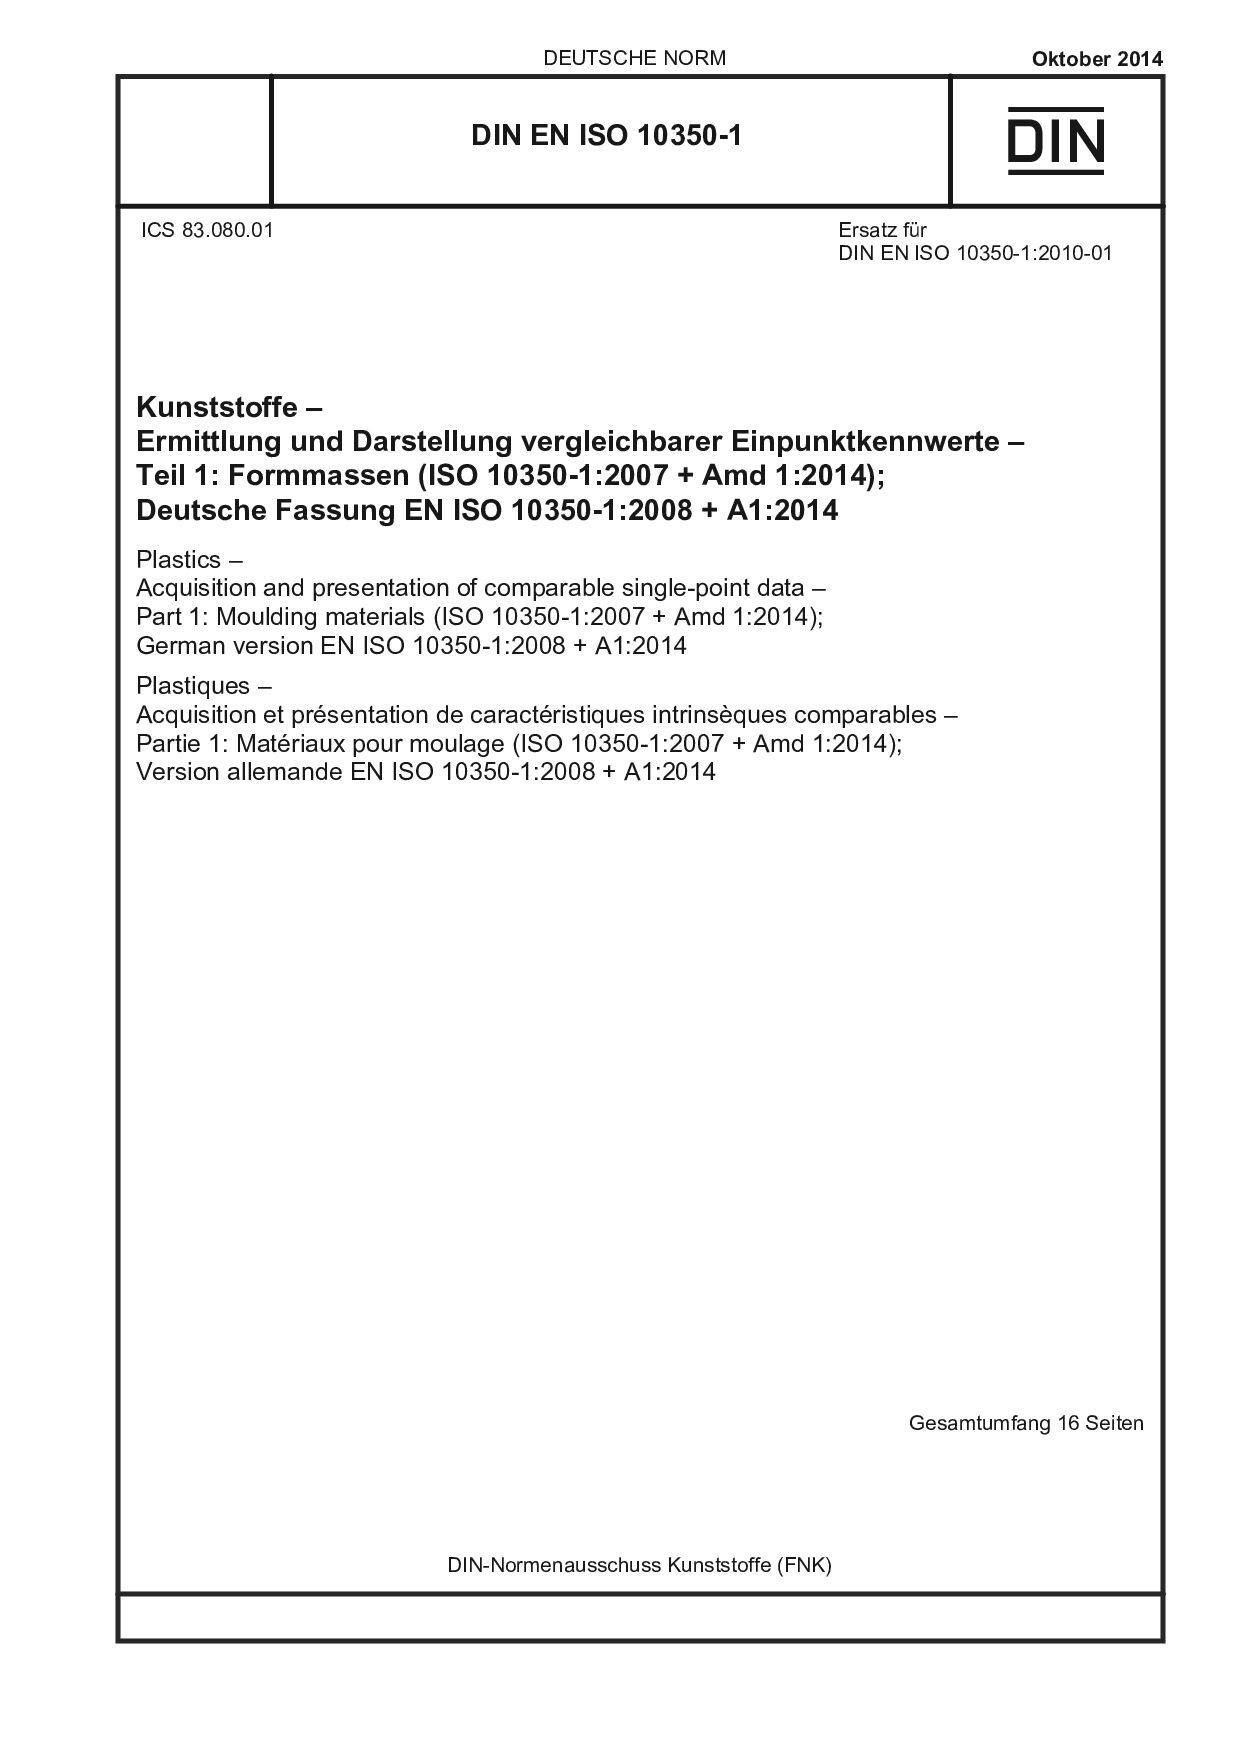 DIN EN ISO 10350-1:2014